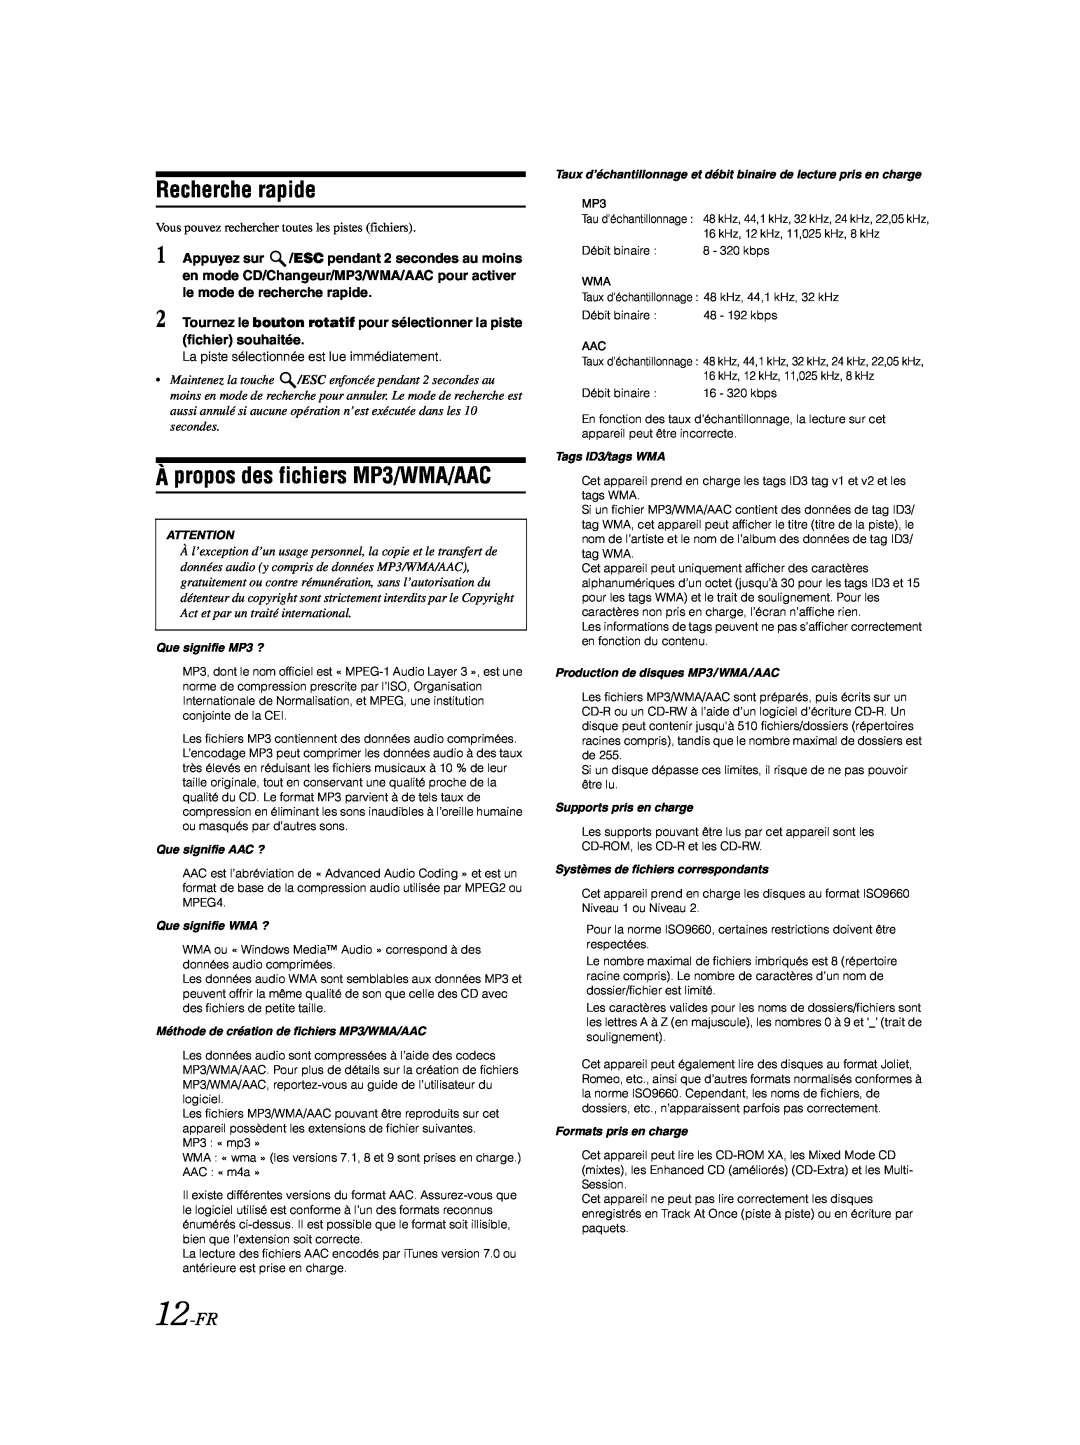 Alpine CDA-9885 owner manual Recherche rapide, À propos des fichiers MP3/WMA/AAC, 12-FR 